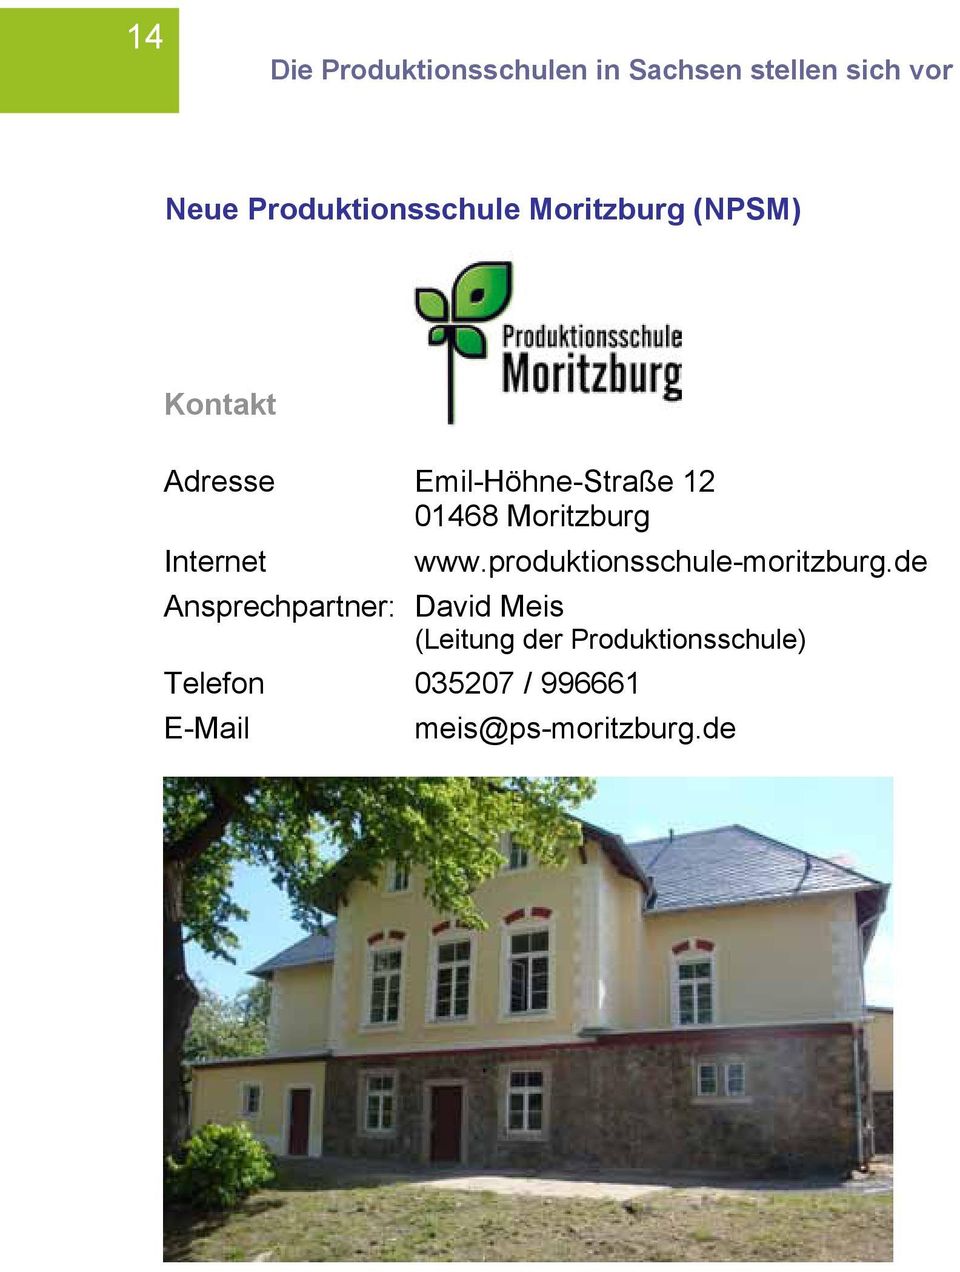 www.produktionsschule-moritzburg.